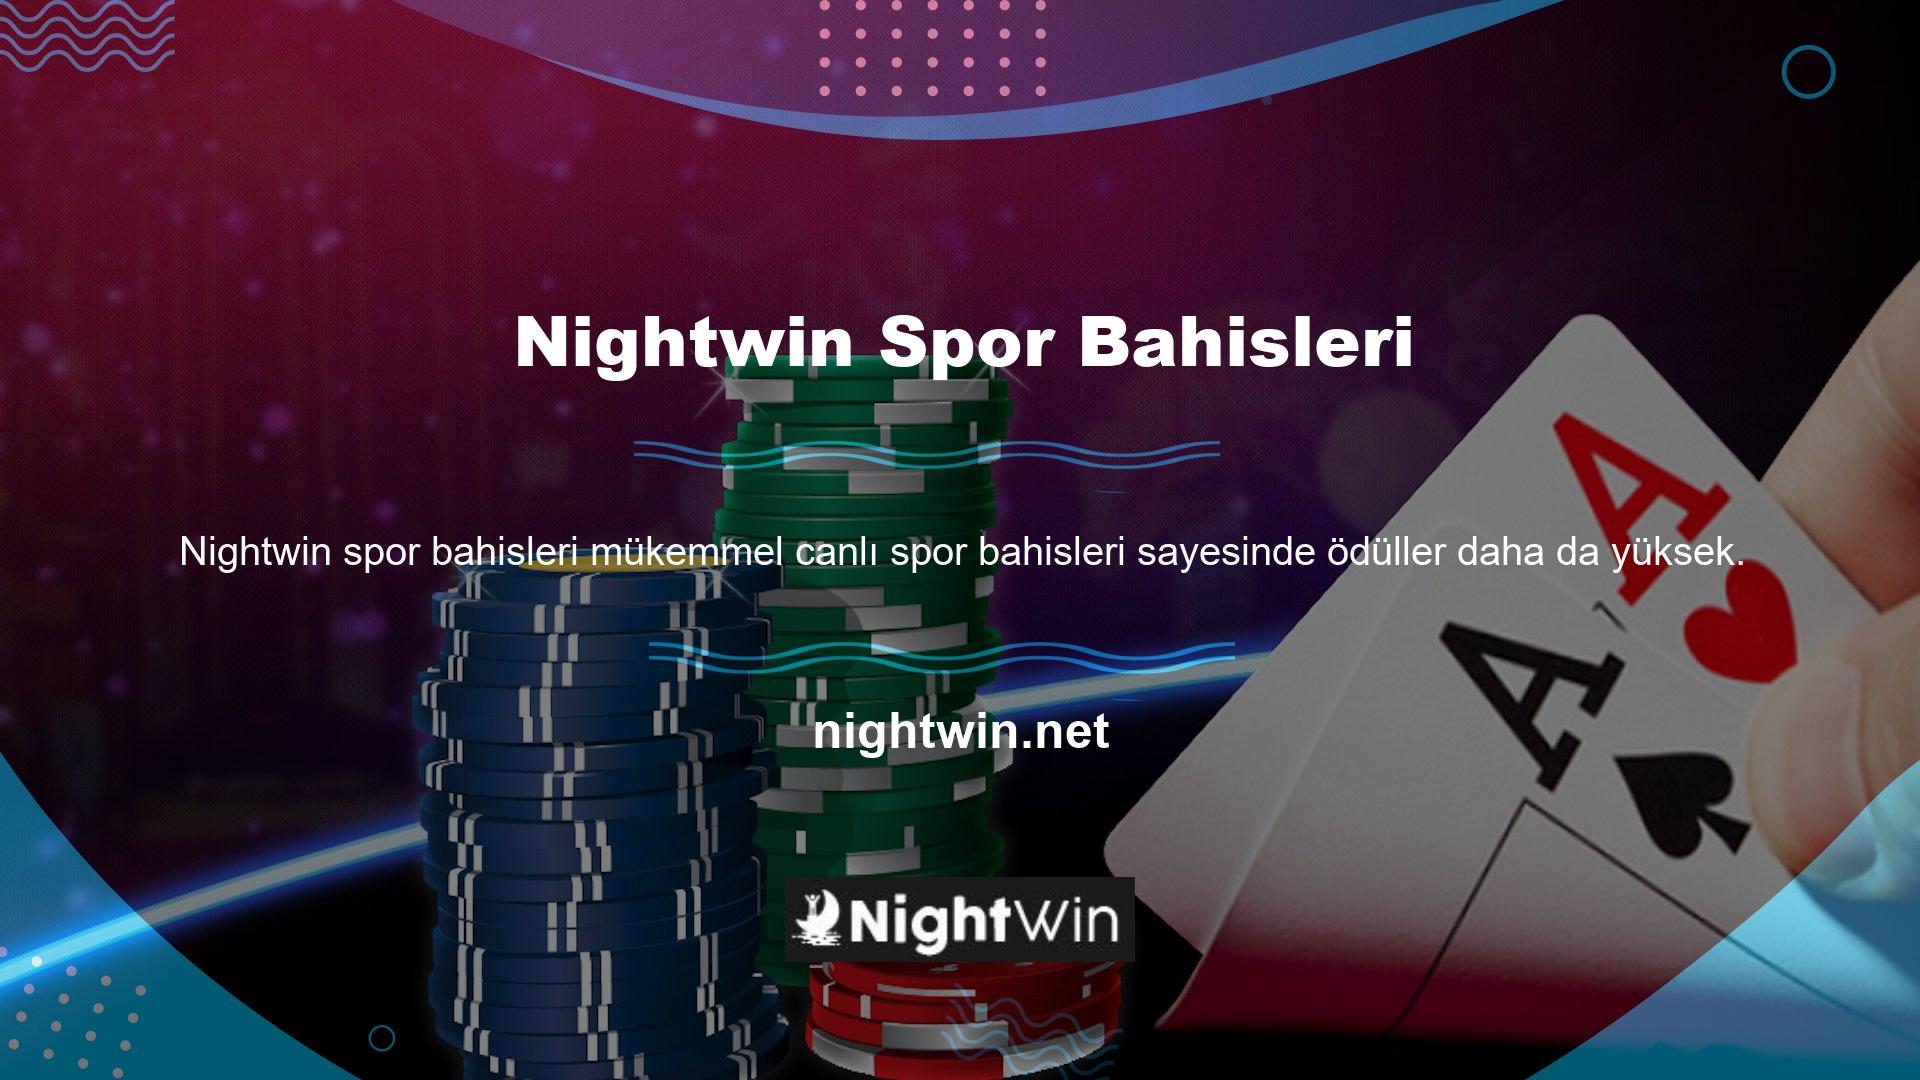 Nightwin TV rakiplerini geride bırakmaya çalışıyor